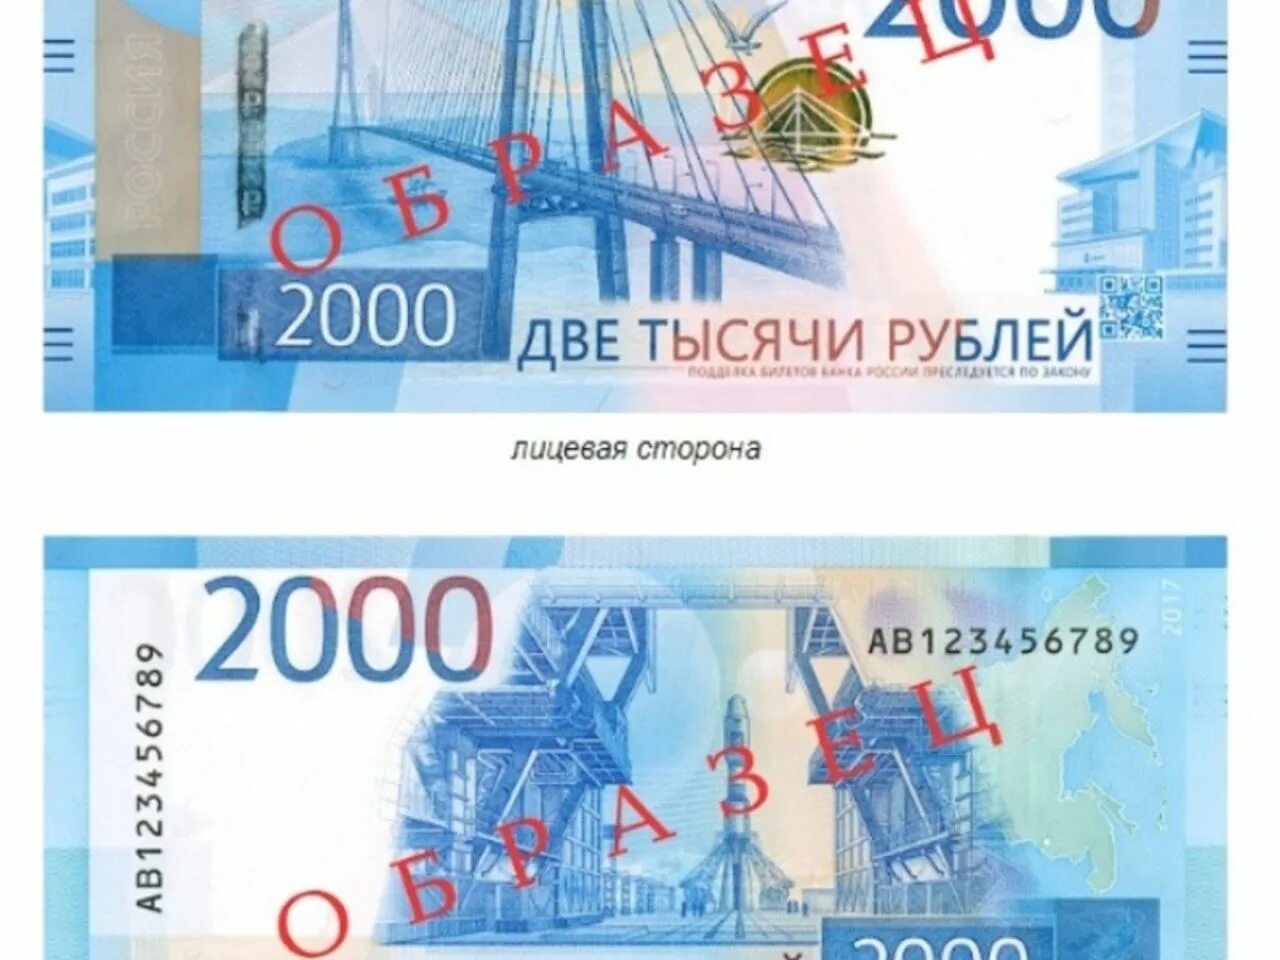 Купюра 2 руб. Купюры номиналом 2000 и 200. Банкнота 2000 руб. 2 Тысячи рублей. Лицевая сторона купюры 2000 рублей.